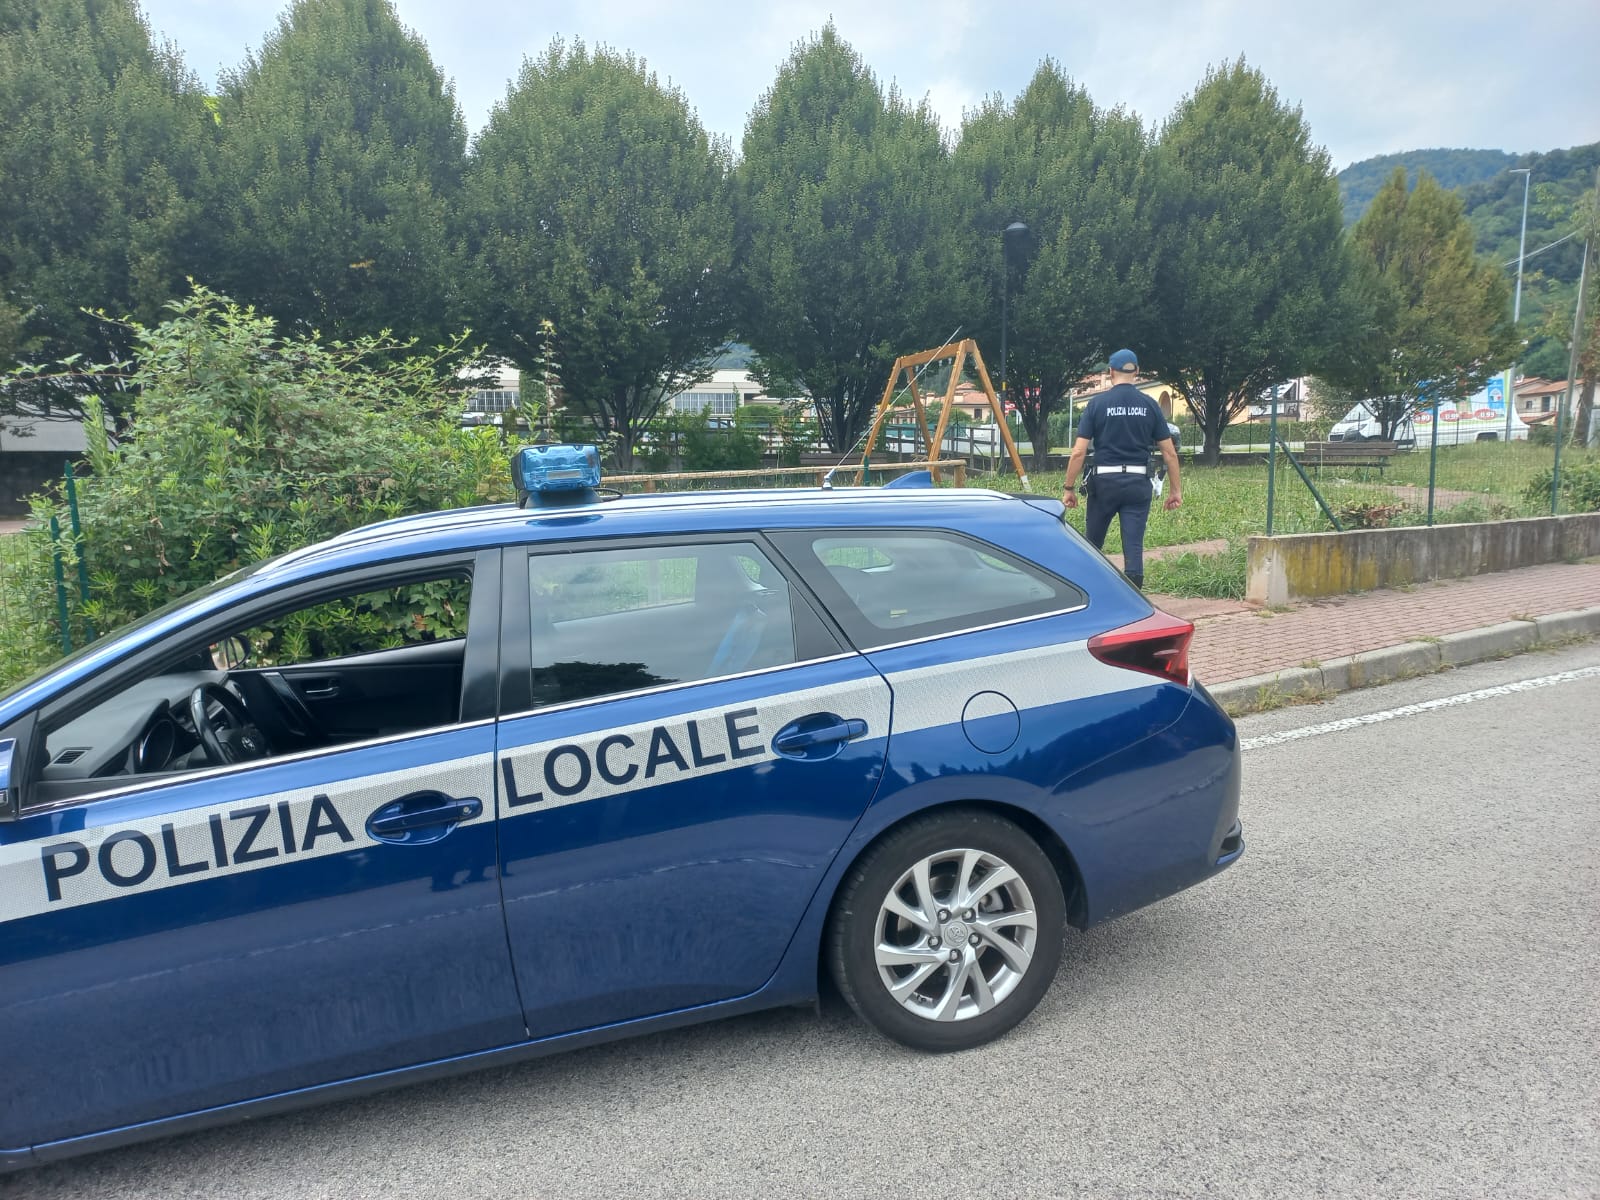 Polizia Locale nordest Vicentino in azione a Torrebelvicino